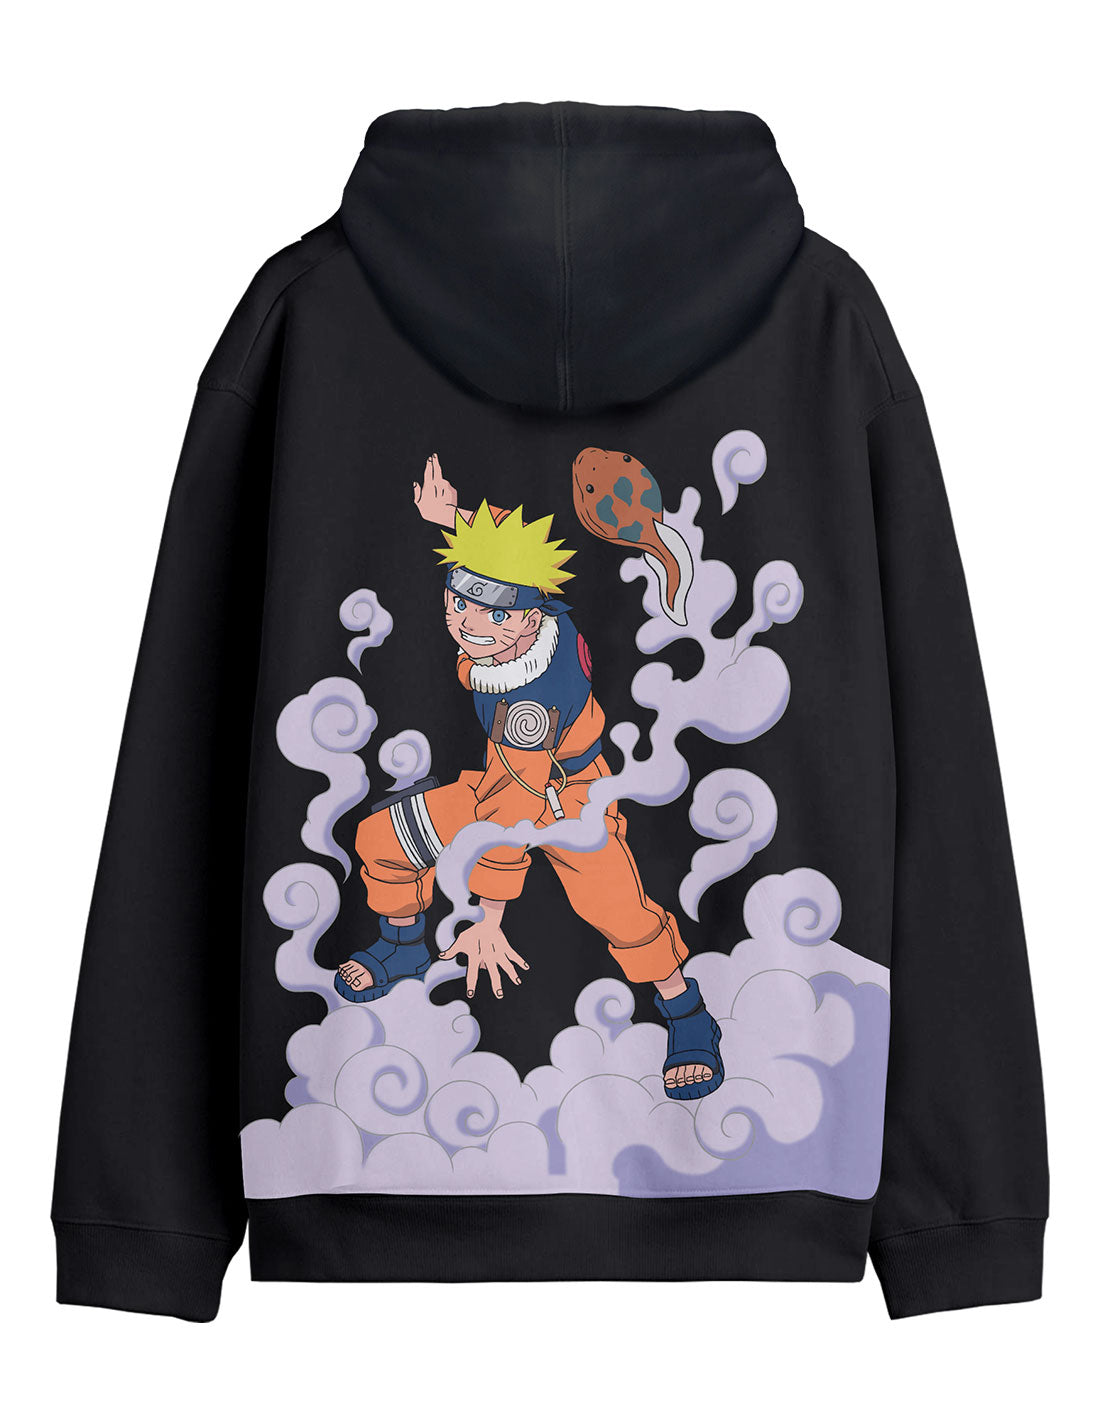 Naruto Sweatshirt - Kuchiyose no Jutsu